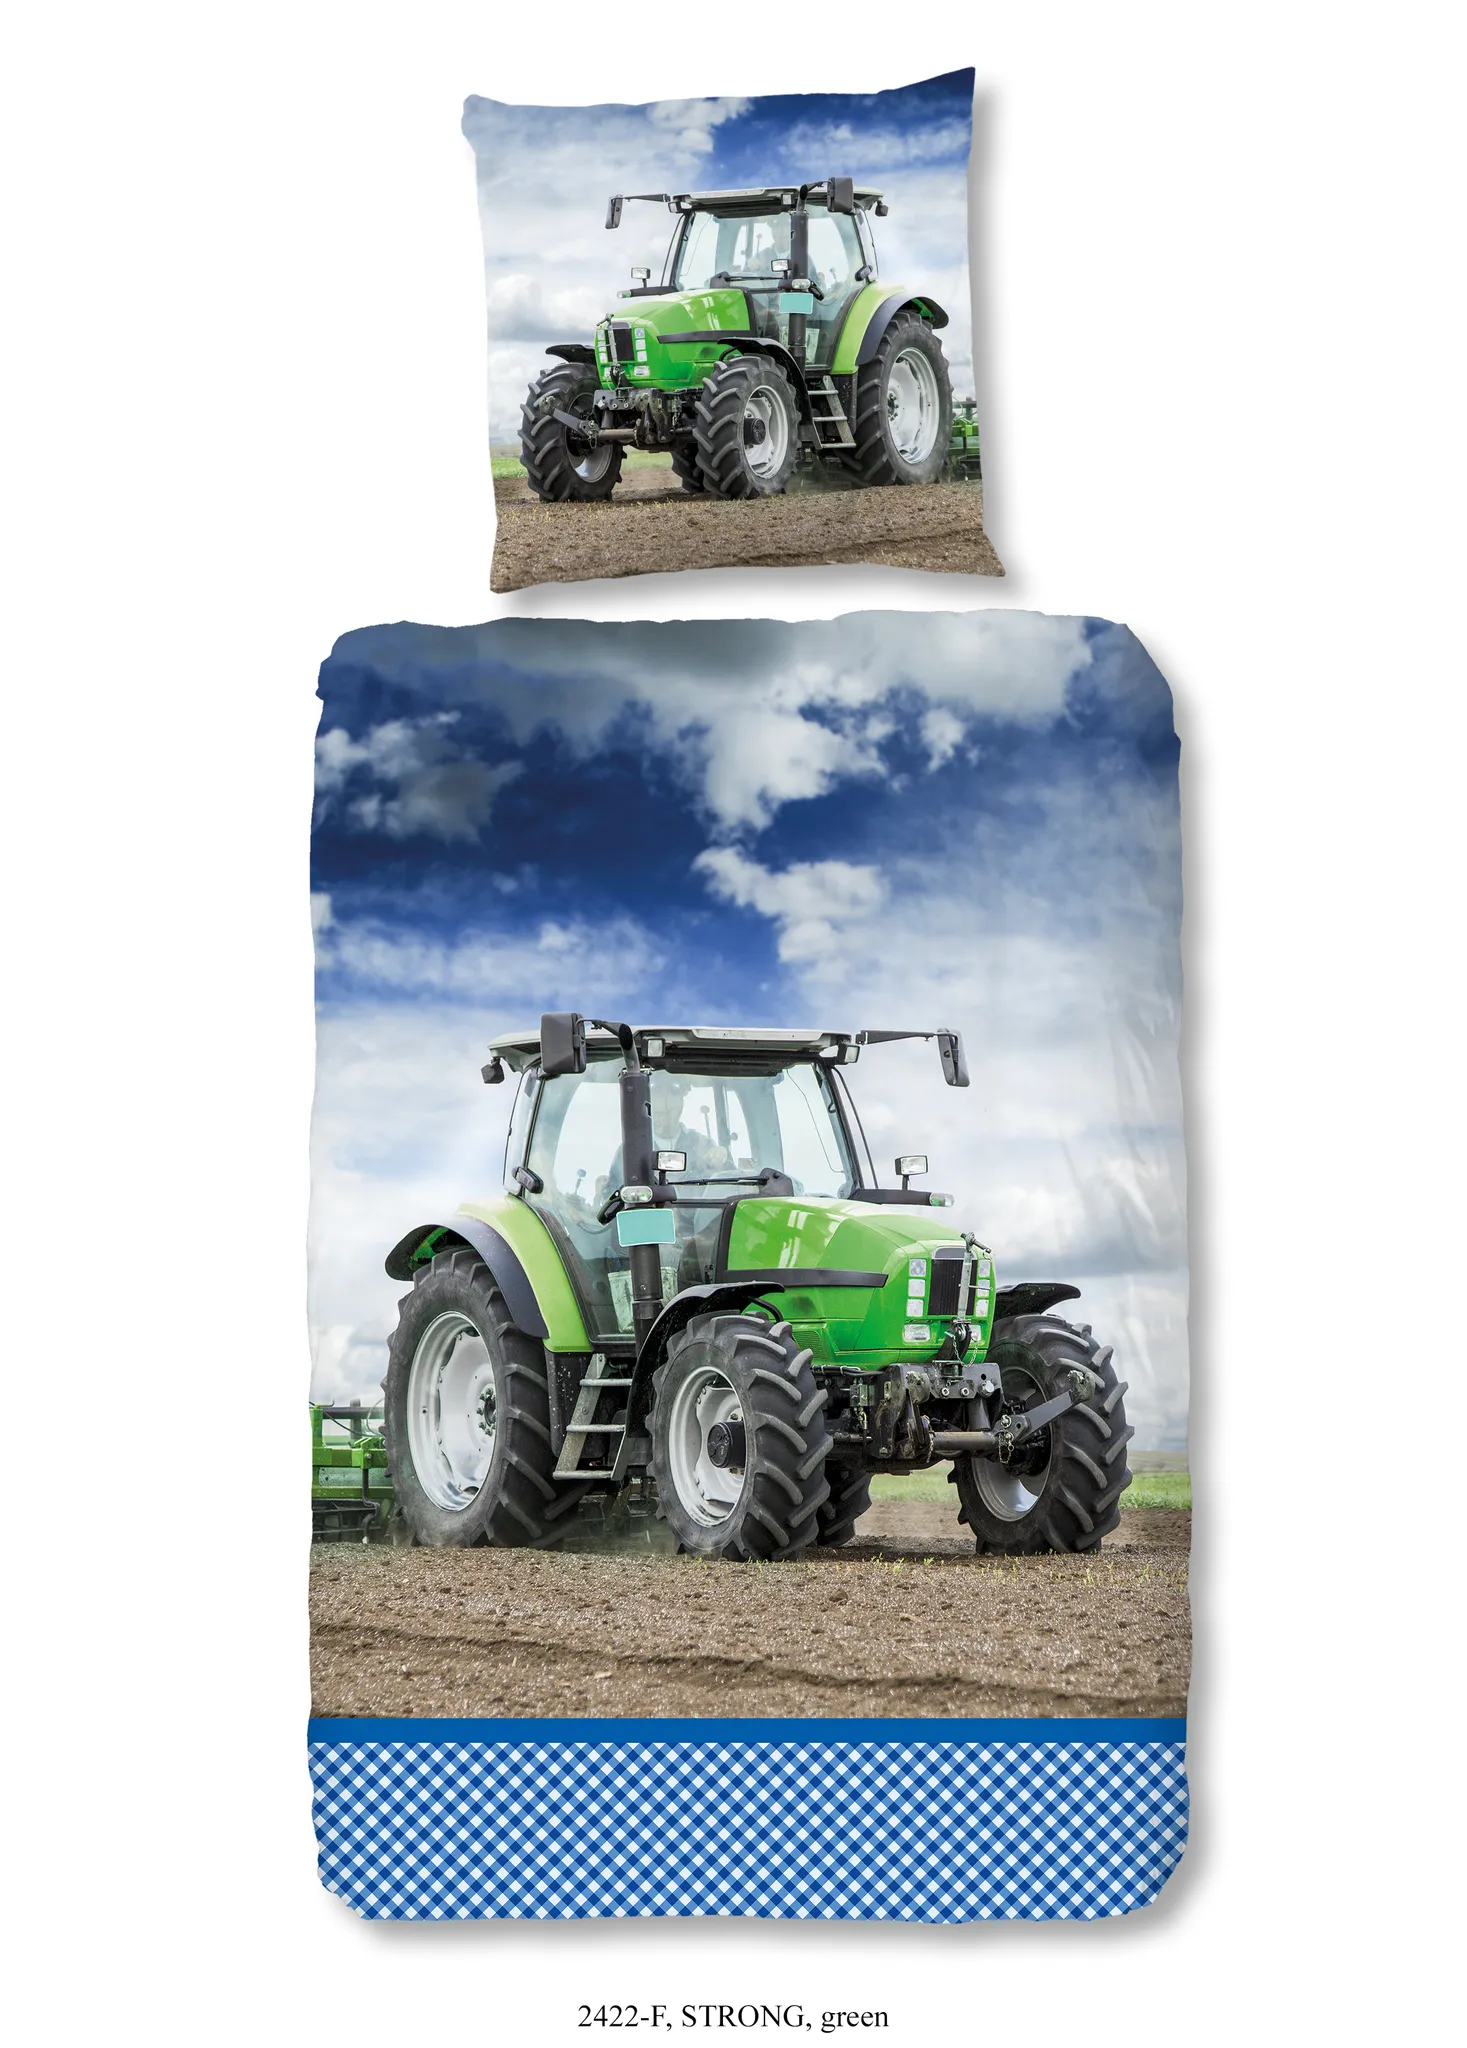 Traktor-Zubehör Für Das Plastiklaubdecken-Bett-Legen Stockbild - Bild von  landschaft, nahrung: 149842909